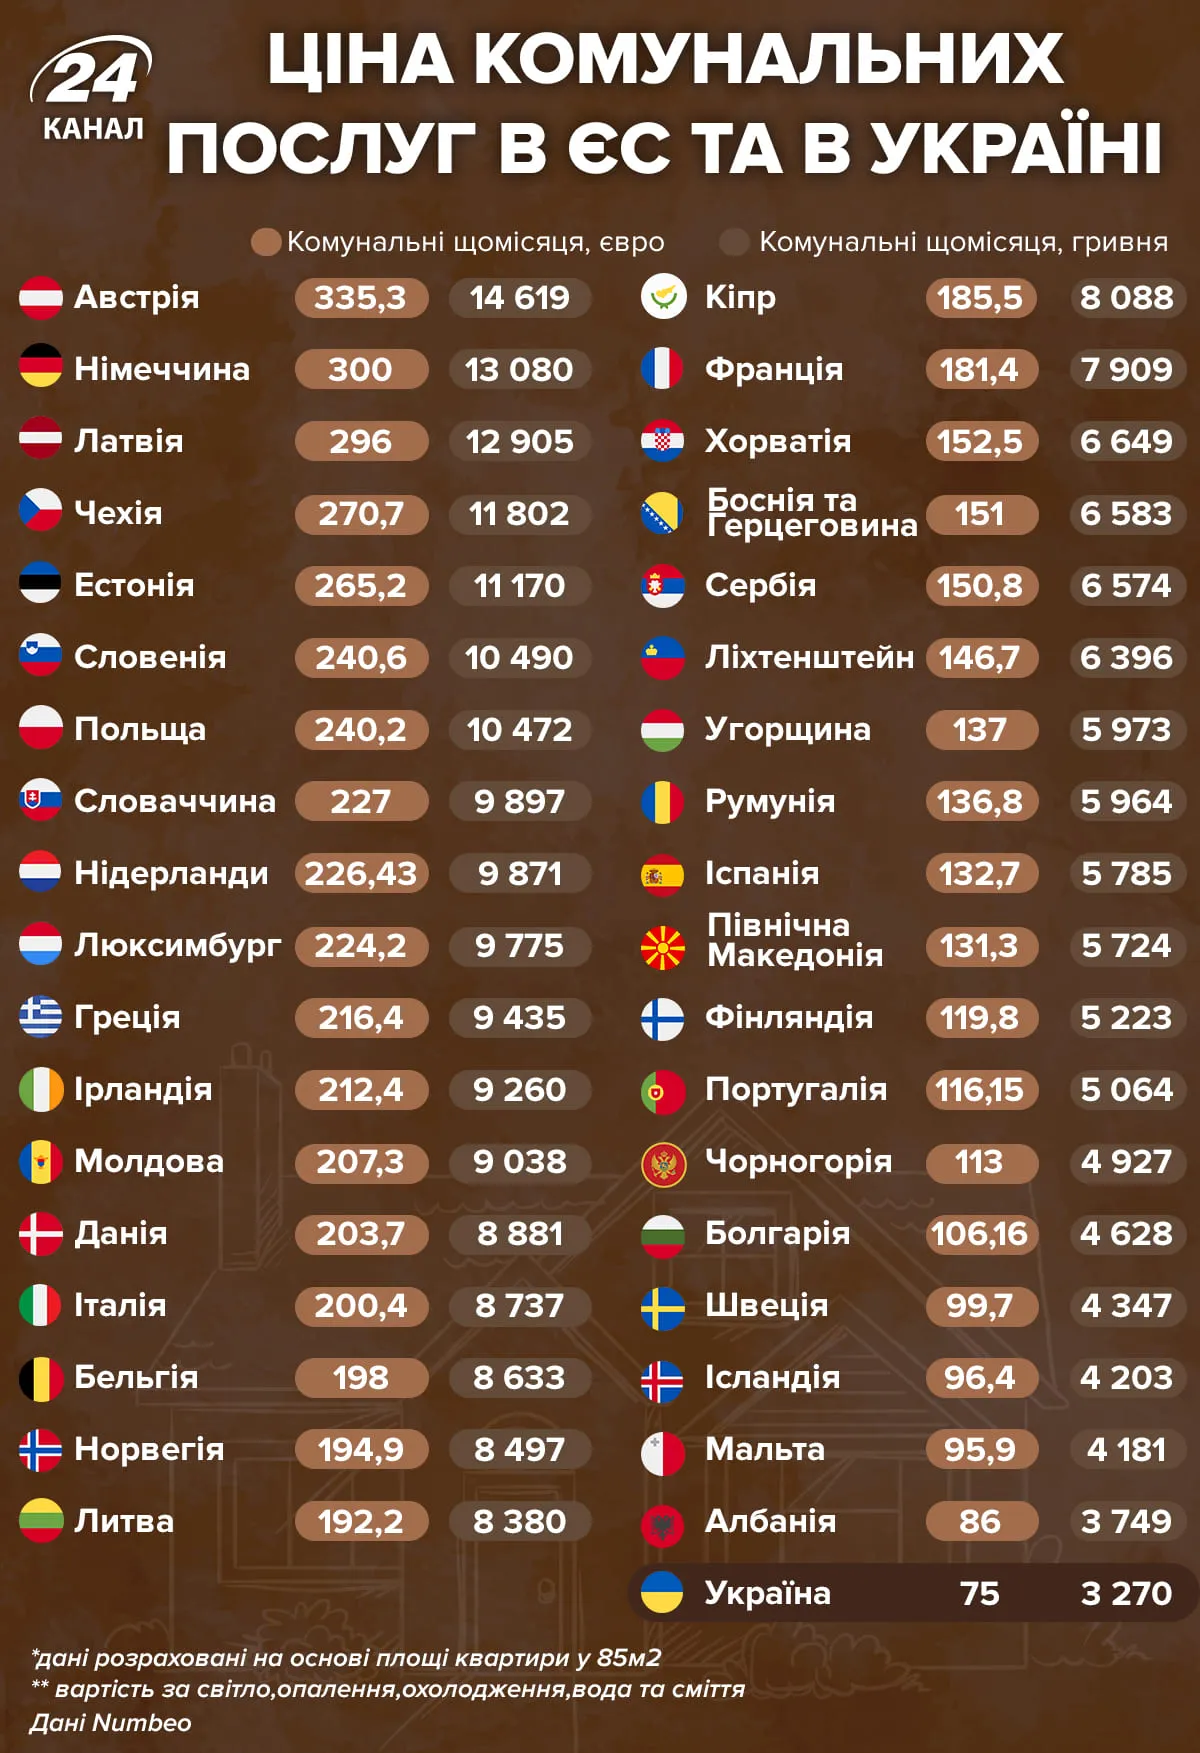 Цена коммунальных услуг в ЕС и Украине 